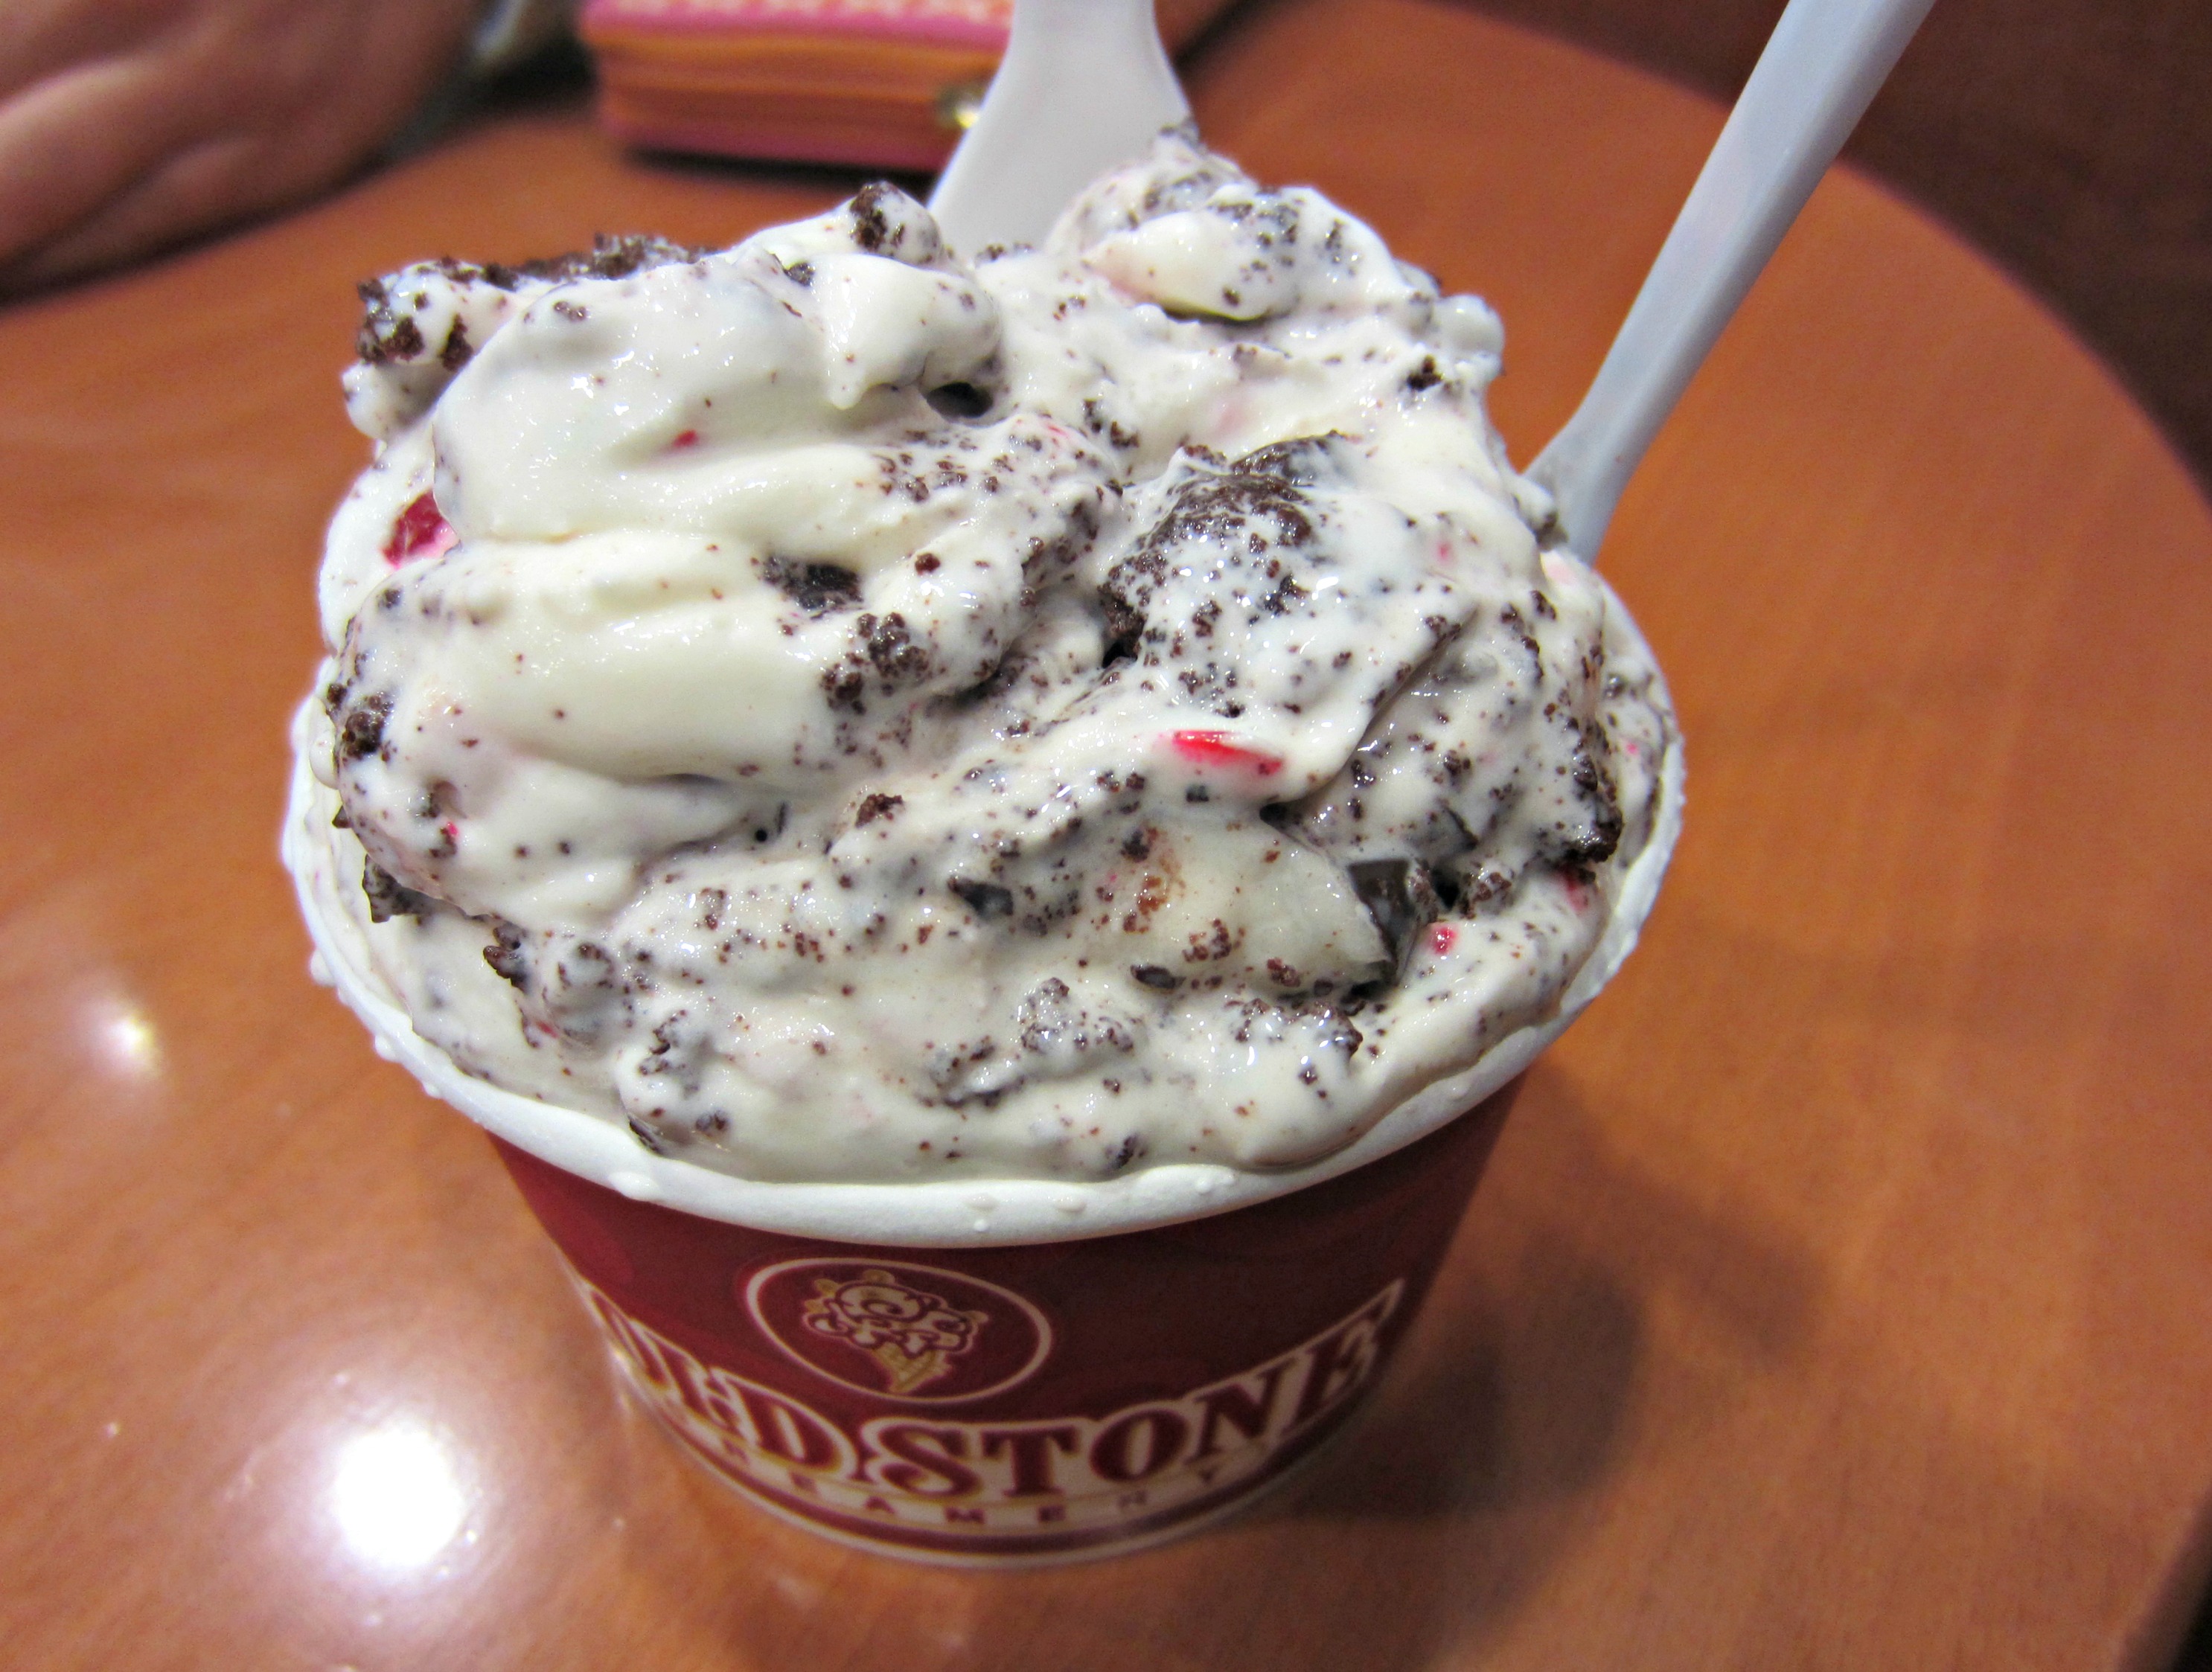 coldstone peppermint ice cream